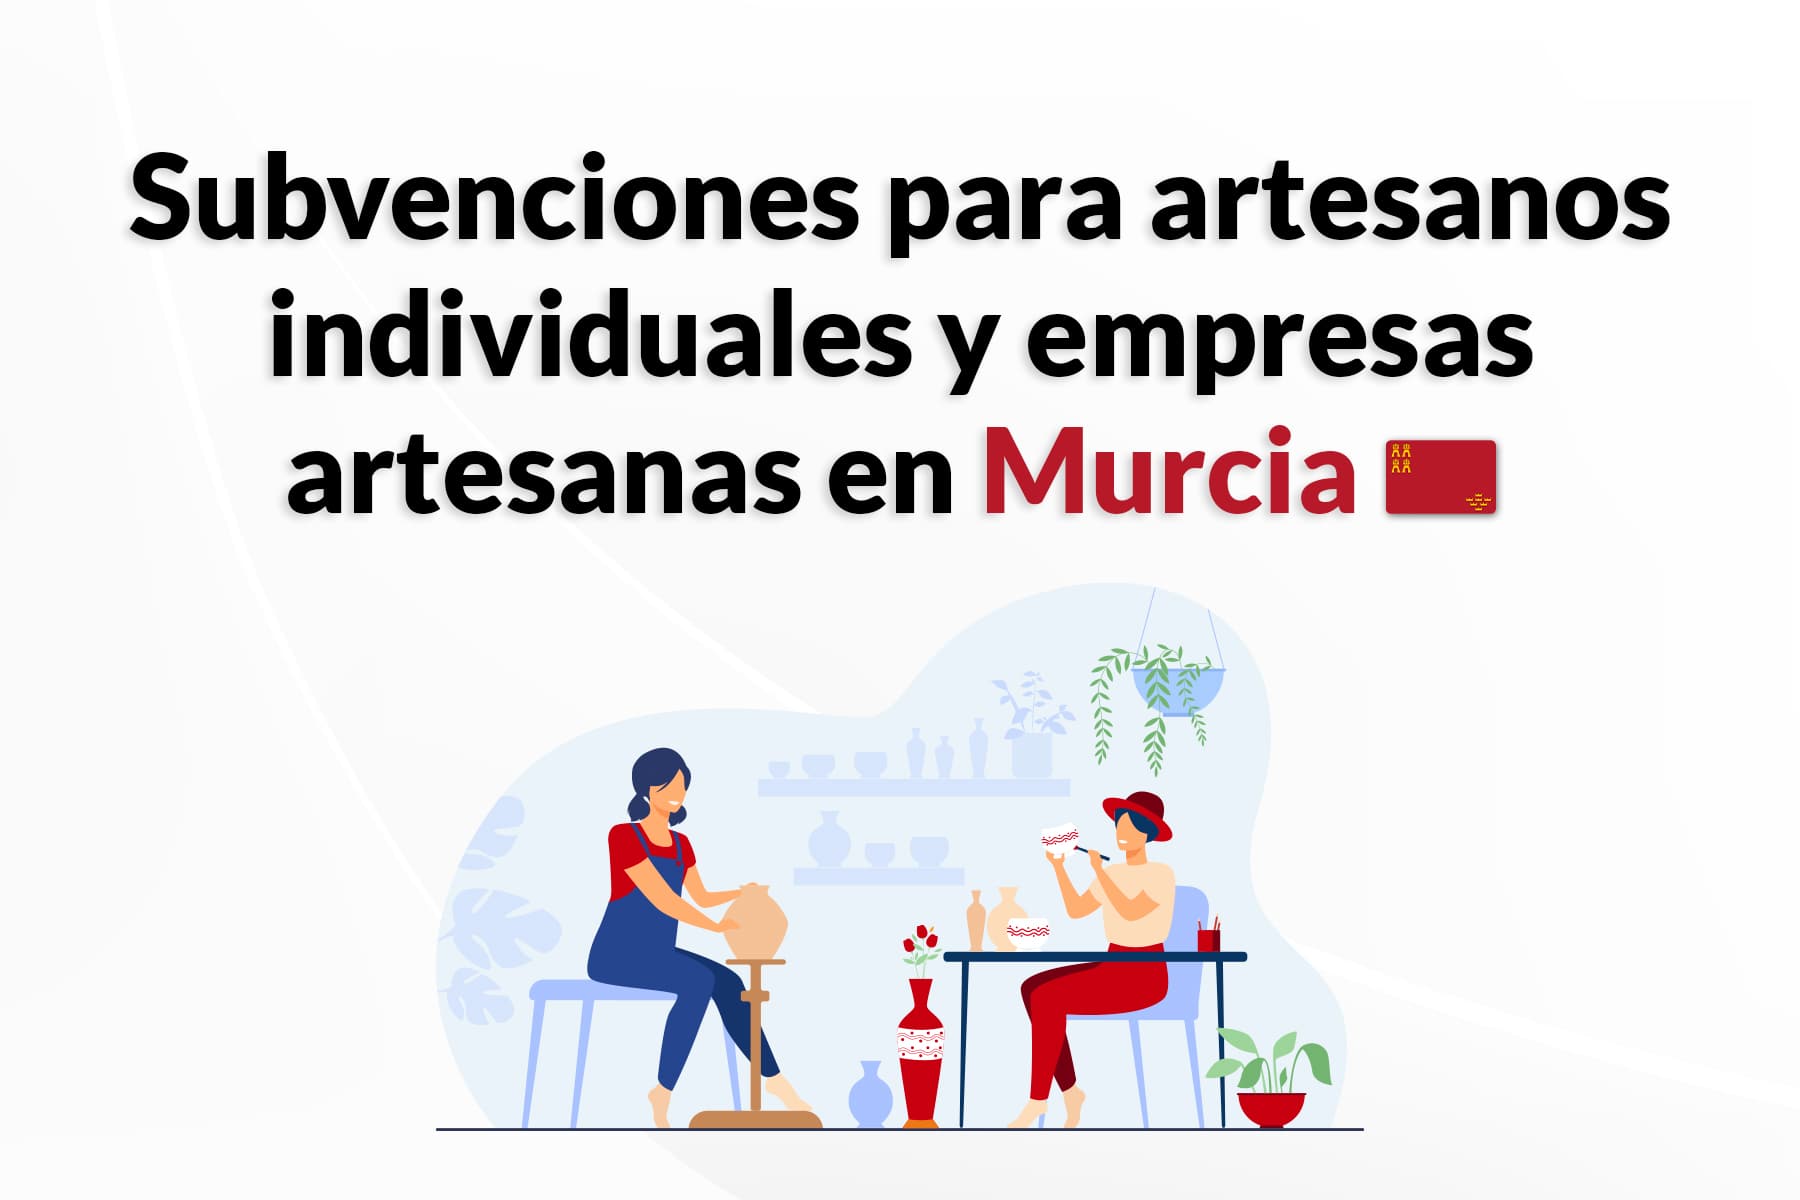 Subvención para artesanos y empresas artesanas de Murcia